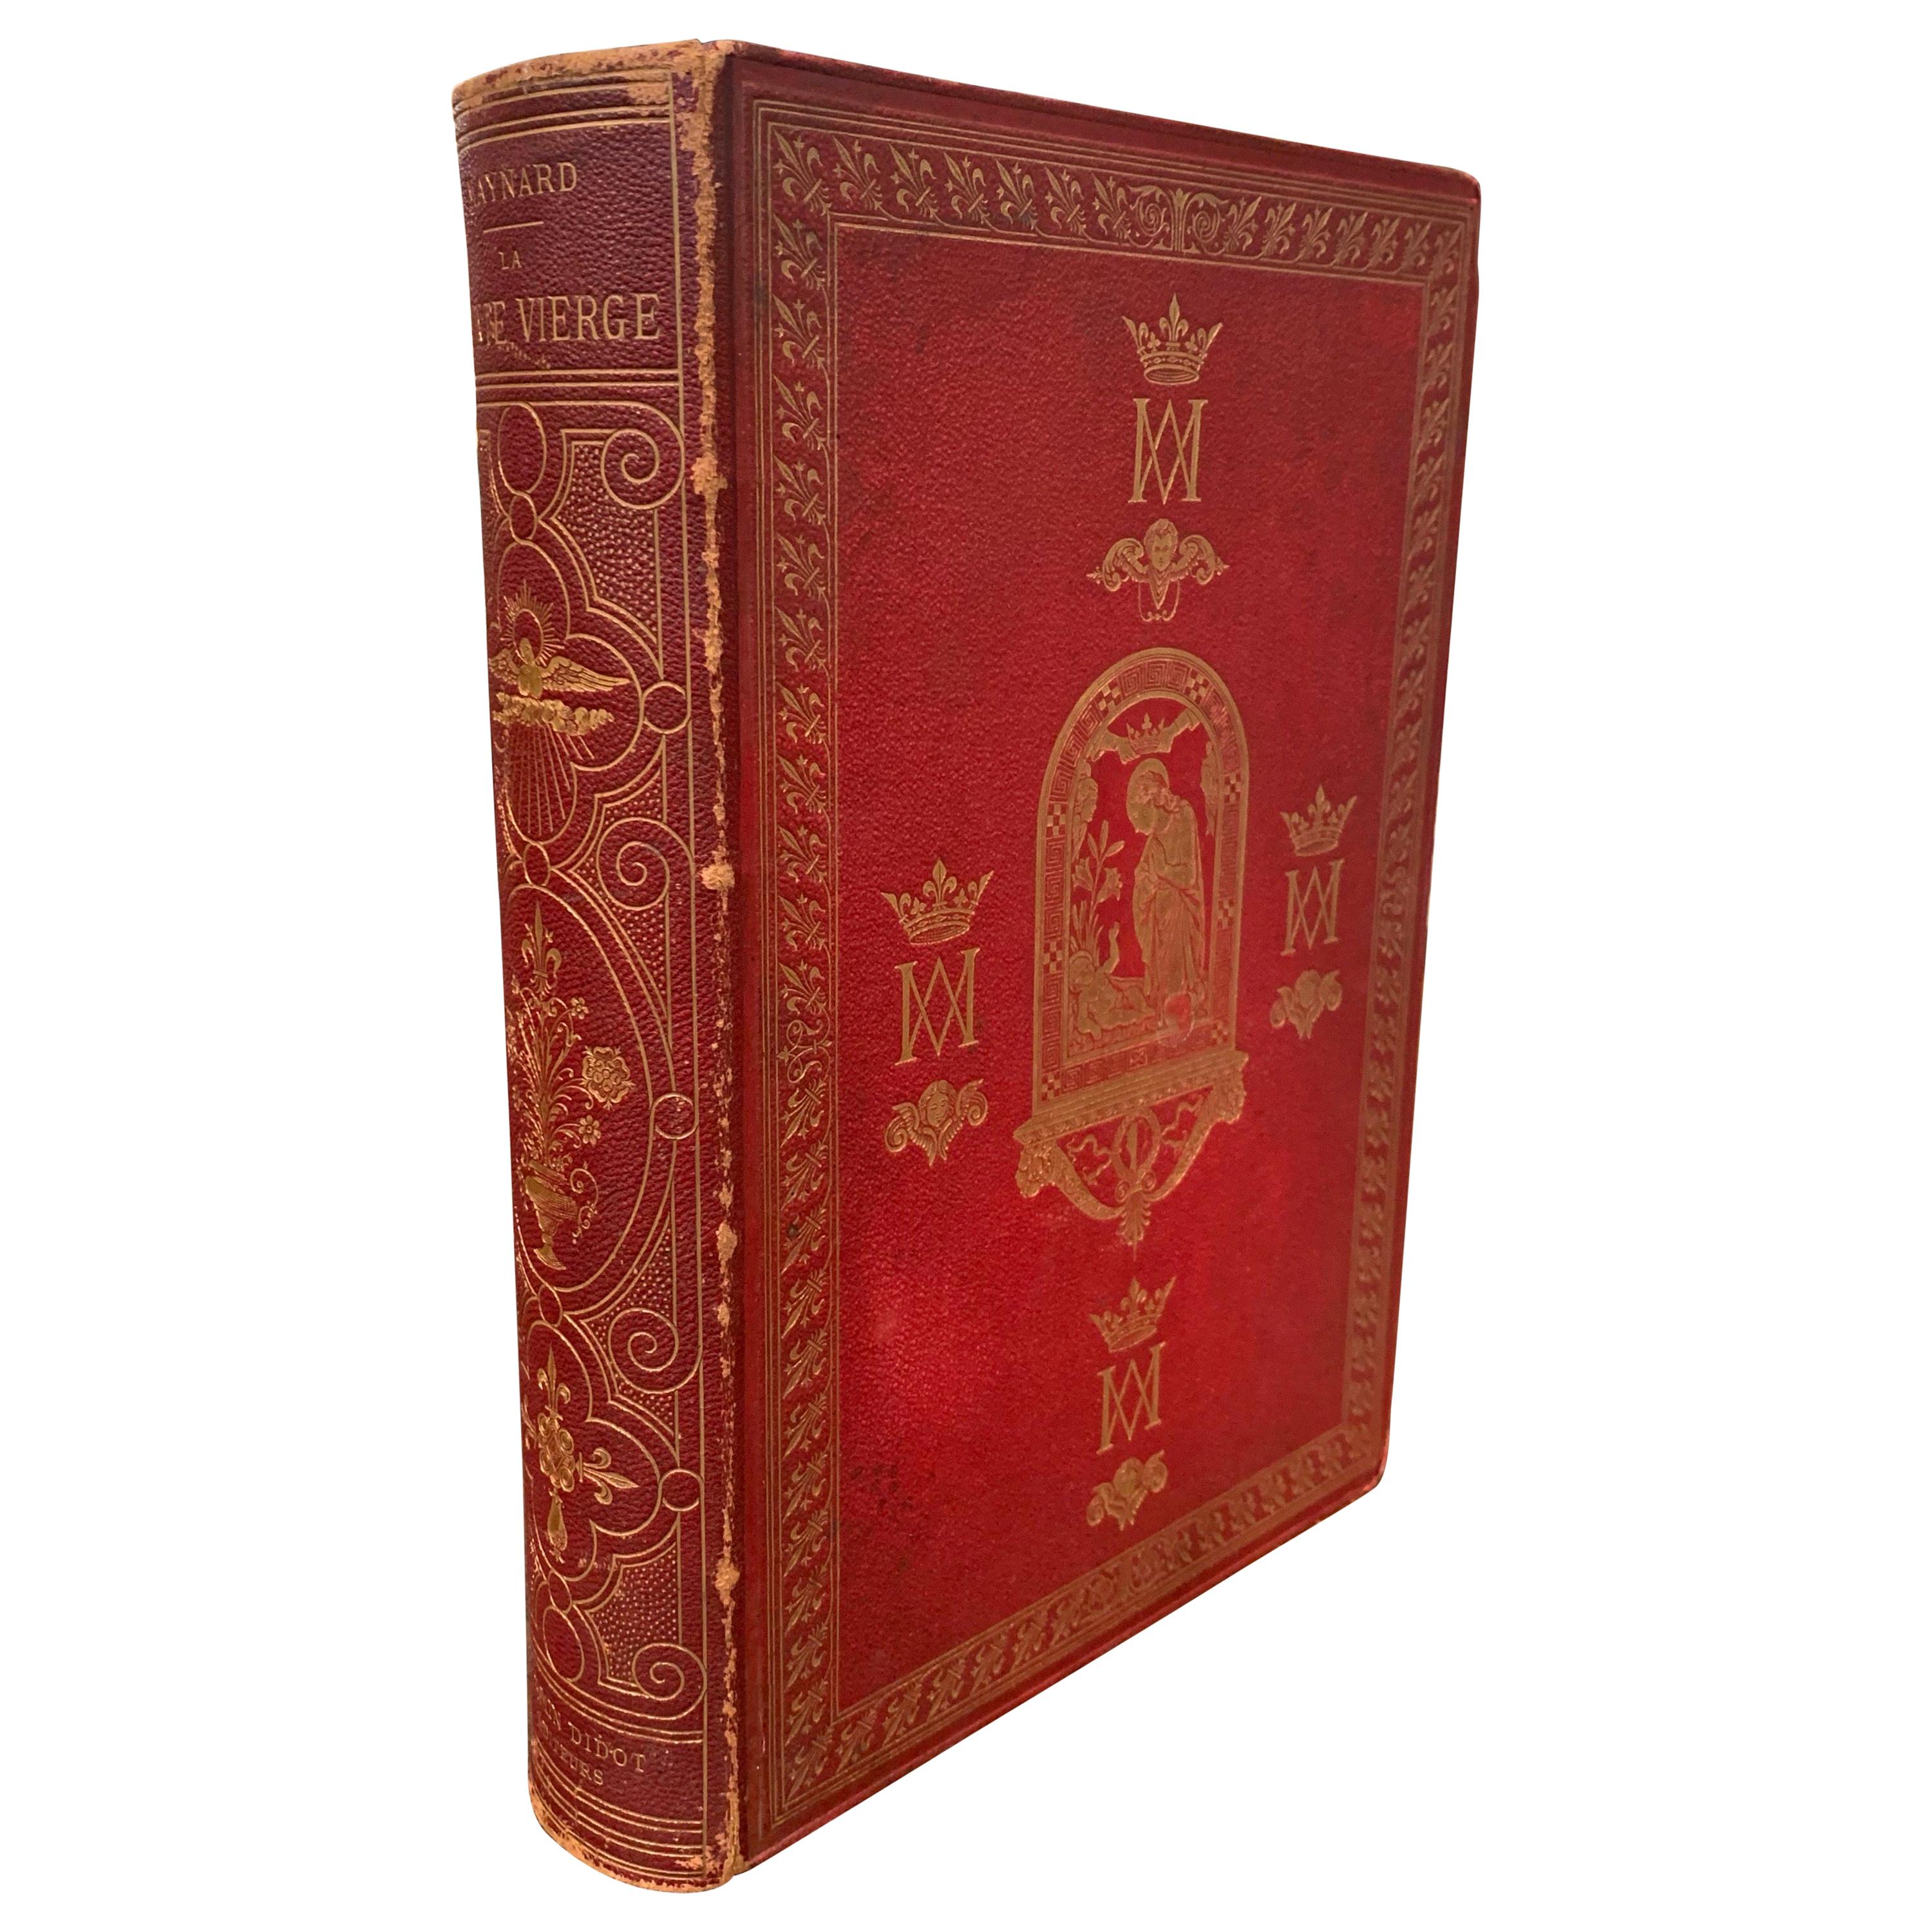 Livre français du 19ème siècle relié et doré représentant la Vierge Marie